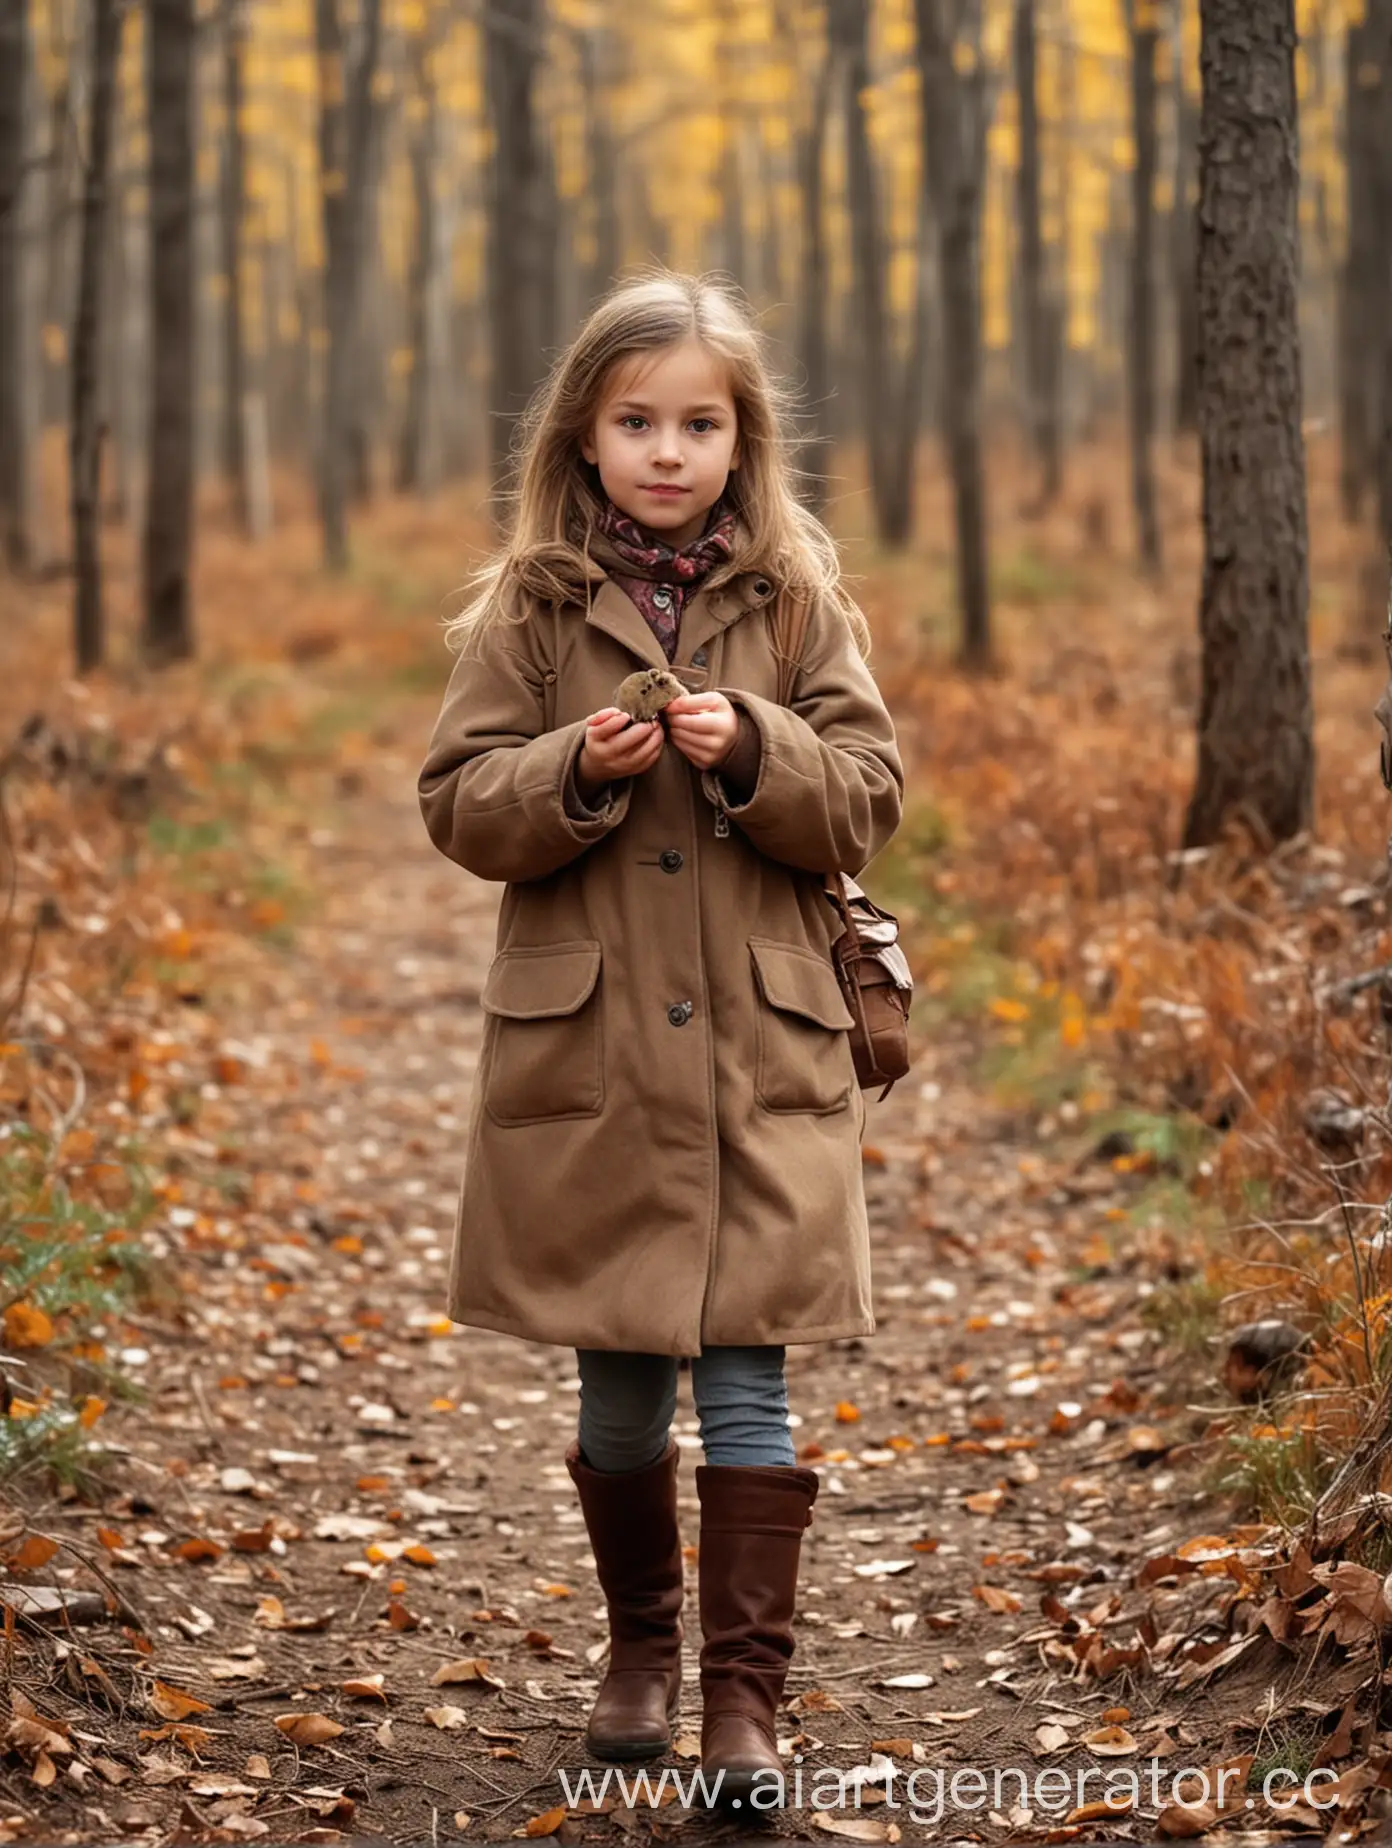 Маленькая девочка 8 лет гуляет по лесу, поздняя осень, она держит коричневого мишку в руке